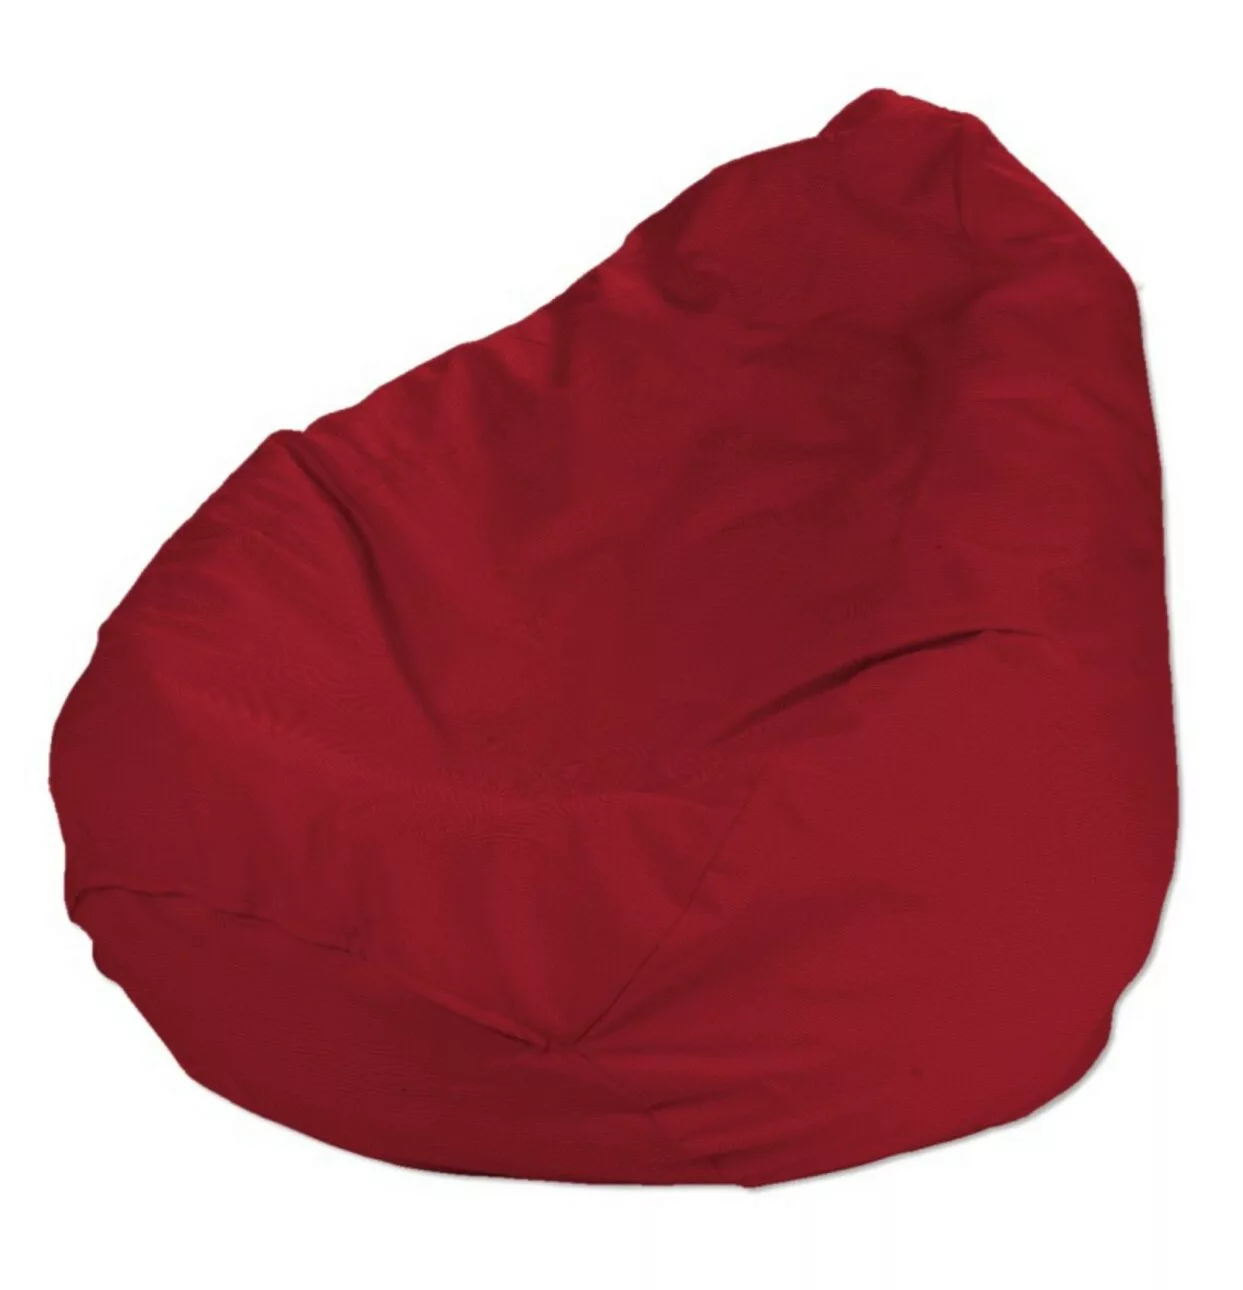 Bezug für Sitzsack, rot, Bezug für Sitzsack Ø60 x 105 cm, Etna (705-60) günstig online kaufen